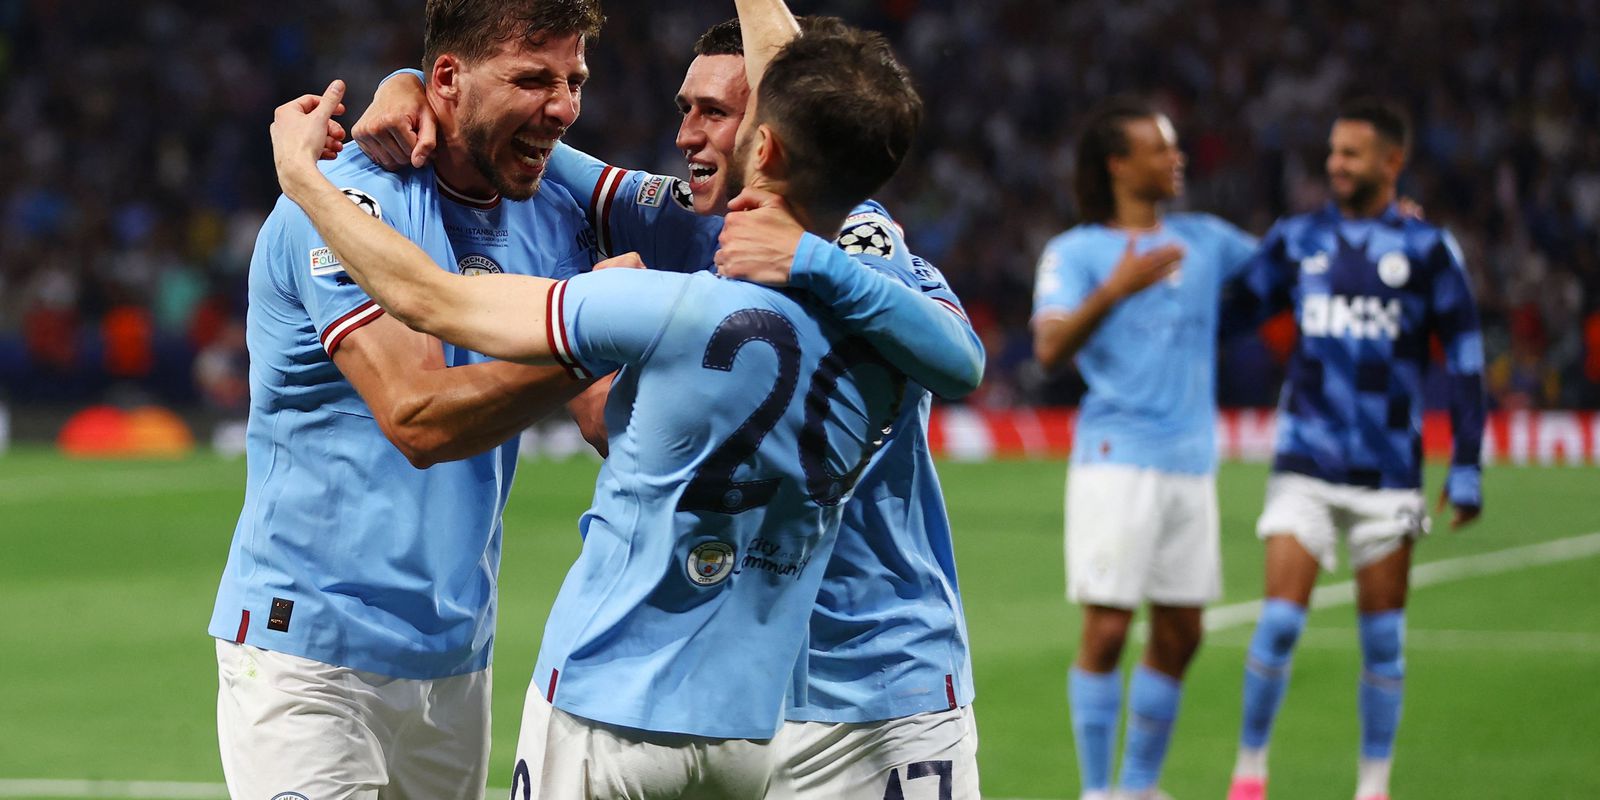 Manchester City bate Inter de Milão e conquista a Liga dos Campeões